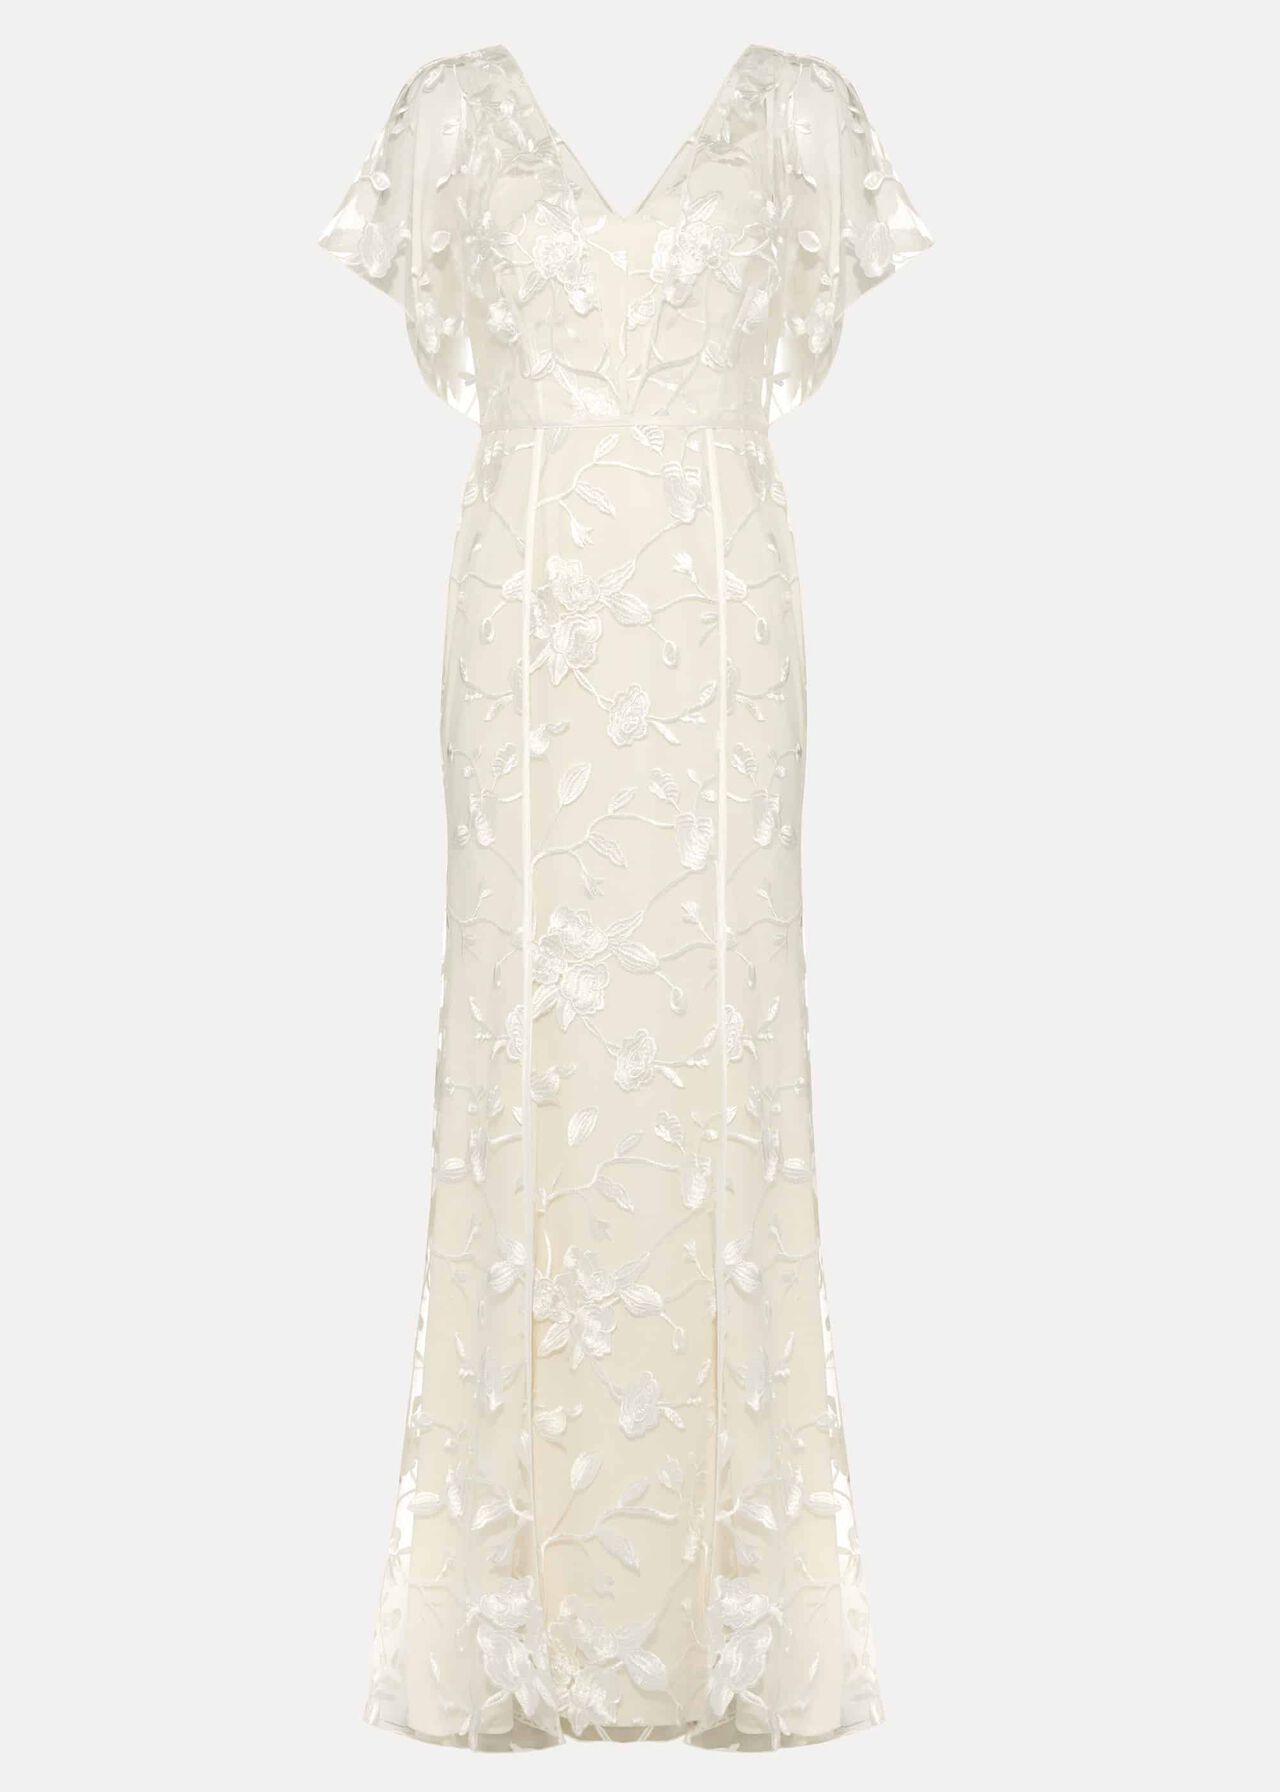 Layla Lace Wedding Dress